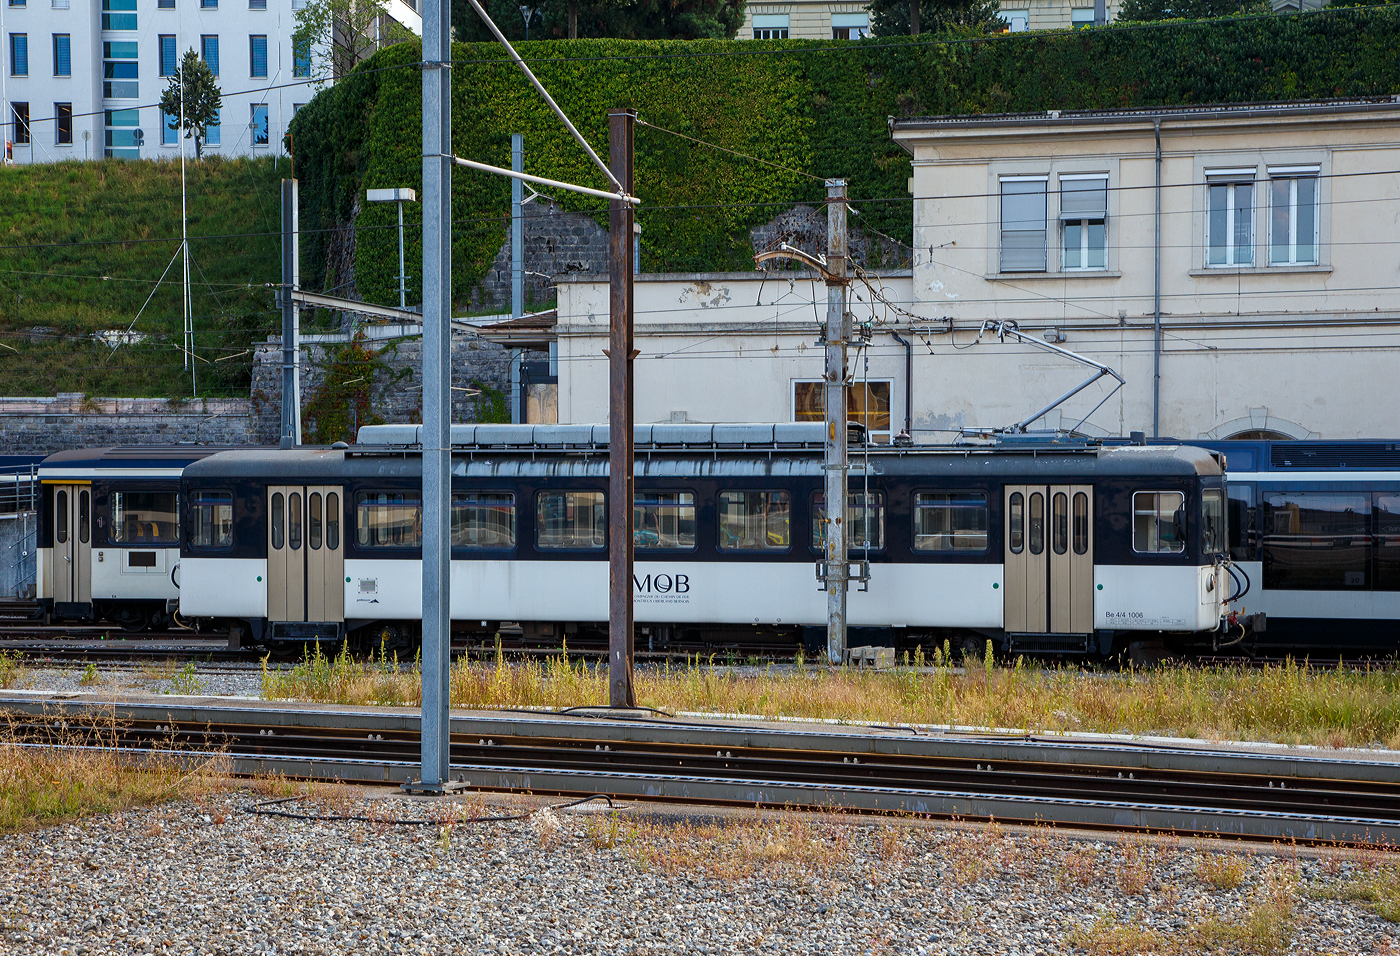 Der Triebwagen MOB Be 4/4 1006 (Typ „Bipperlisi“) Montreux-Berner Oberland-Bahn (Chemin de fer Montreux Oberland bernois), ex ASm Be 4/4 301 (Aare Seeland mobil AG), ex OJB Be 4/4 83 (Oberaargau-Jura-Bahnen) ist am 08.09.2023 beim Bahnhof Montreux abgestellt.

Der vierachsige elektrische Triebwagen wurde 1966 von SWS (Schweizerische Wagons- und Aufzgefabrik AG) in Schlieren gebaut, die elektrische Ausrstung ist von der MFO (Maschinenfabrik Oerlikon). Geliefert wurde er fr die Oberaargau-Jura-Bahnen als OJB Be 4/4 83. Die OJB entstand 1958 aus der Fusion der Langenthal-Jura-Bahn (LJB) mit der Langenthal-Melchnau-Bahn (LMB), ab 1990 Regionalverkehr Oberaargau (RVO). Die RVO fusionierte wiederum 1999 mit der Solothurn-Niederbipp-Bahn (SNB), der Biel-Tuffelen-Ins-Bahn (BTI) und den Oberaargauischen Automobilkursen (OAK) zur Aare Seeland mobil (ASm), so wurde aus dem Triebwagen der  ASm Be 4/4 301. IM Jahr 2012 wurde er dann an die MOB verkauft und in den Werksttten in Chernex an die Bedrfnisse anpasste und in den heutigen MOB Be 4/4 1006 unbenannte.

TECHNISCHE DATEN:
Hersteller: SWS/MOB
Spurweite: 1.000 mm (Schmalspur)
Achsformel: Bo’Bo’
Lnge ber Puffer: 18.230 mm
Lnge des Kastens: 17.070 mm
Drehzapfenabstand: 11.770 mm
Achsabstand im Drehgestell: 2.000 mm
Triebraddurchmesser: 760 mm (neu)
Hhe: 4.030 mm
Breite: 2.680 mm
Stundenleistung: 368 kW
Stundenzugkraft : 3,6 t (bei 35 km/h)
bersetzung: 1:5,64
Hchstgeschwindigkeit: 65 km/h
Eigengewicht: 34,5 t
Fahrleitungsspannung: 1200 V = (DC) bei ASm / heute bei MOB 900 V = (DC)
Sitzpltze: 46 (in der 2. Klasse) 
Zuladungsgewicht: 3,2 t
Bremsen: Hs / D / C / X